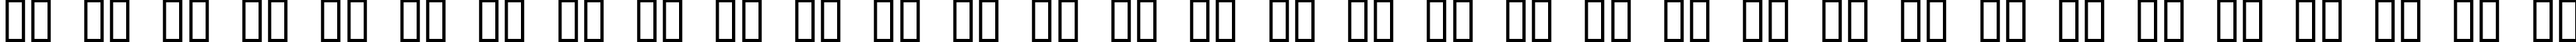 Пример написания русского алфавита шрифтом Argosy